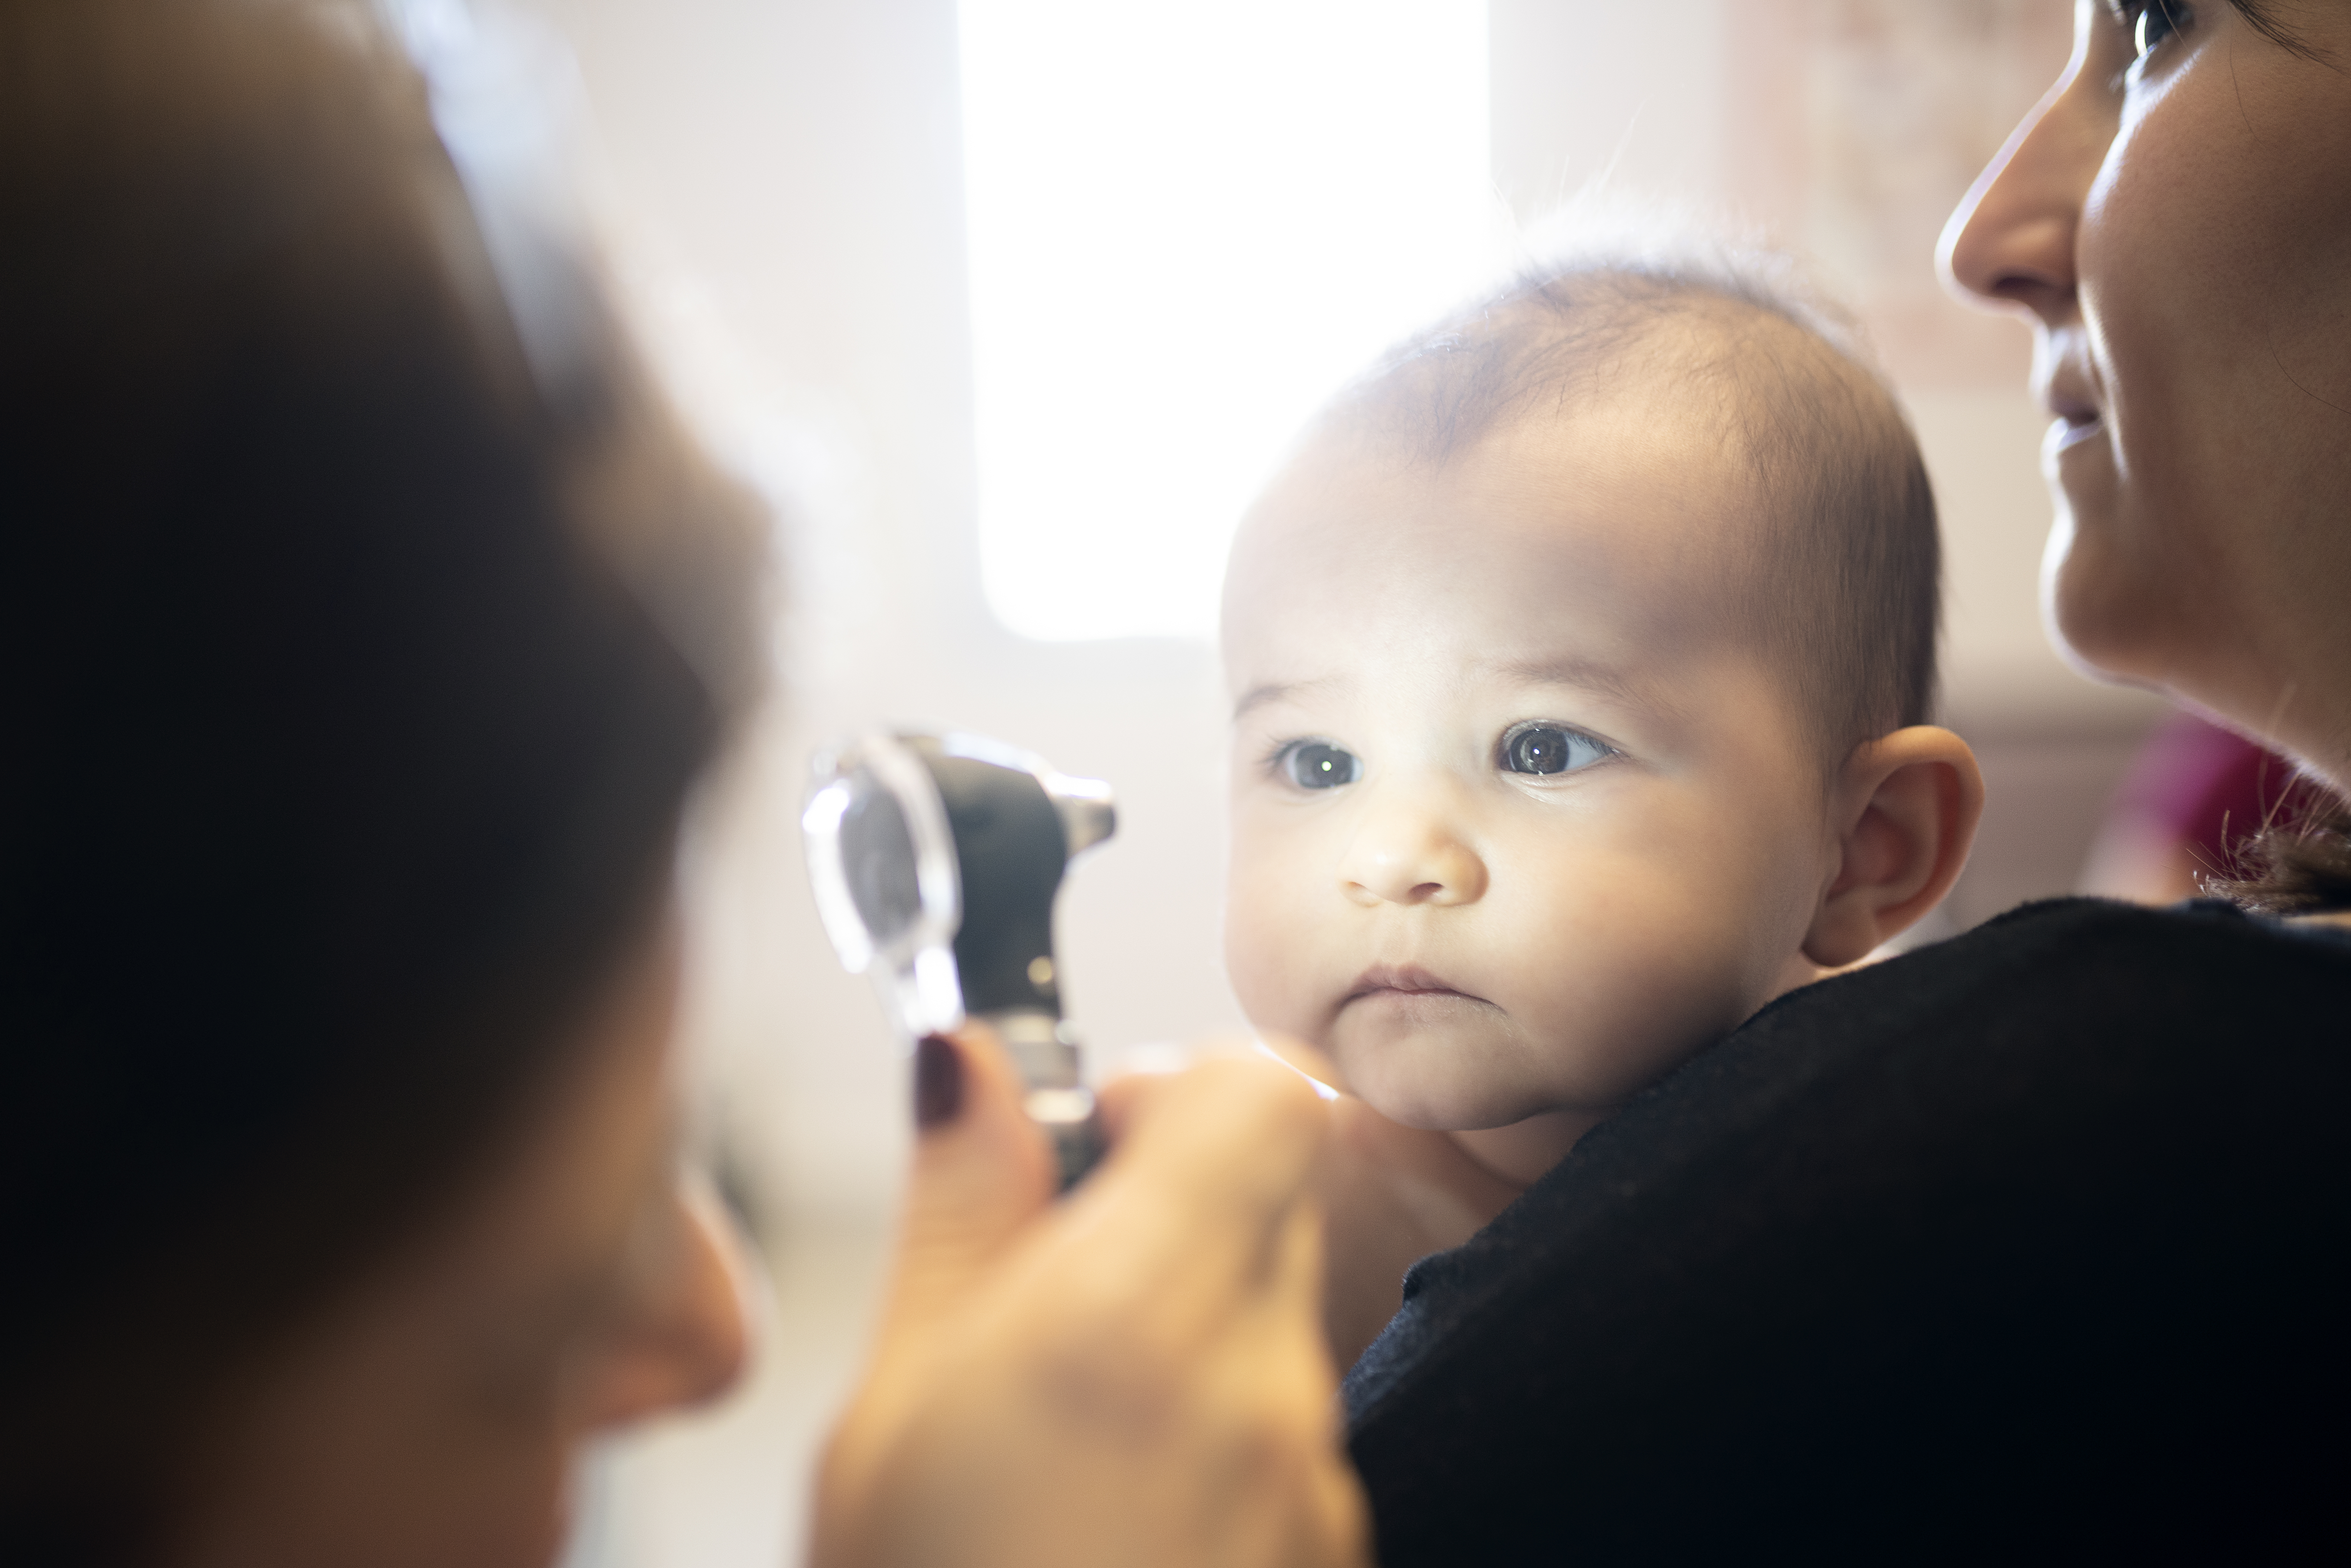 Baby receiving an eye examination.